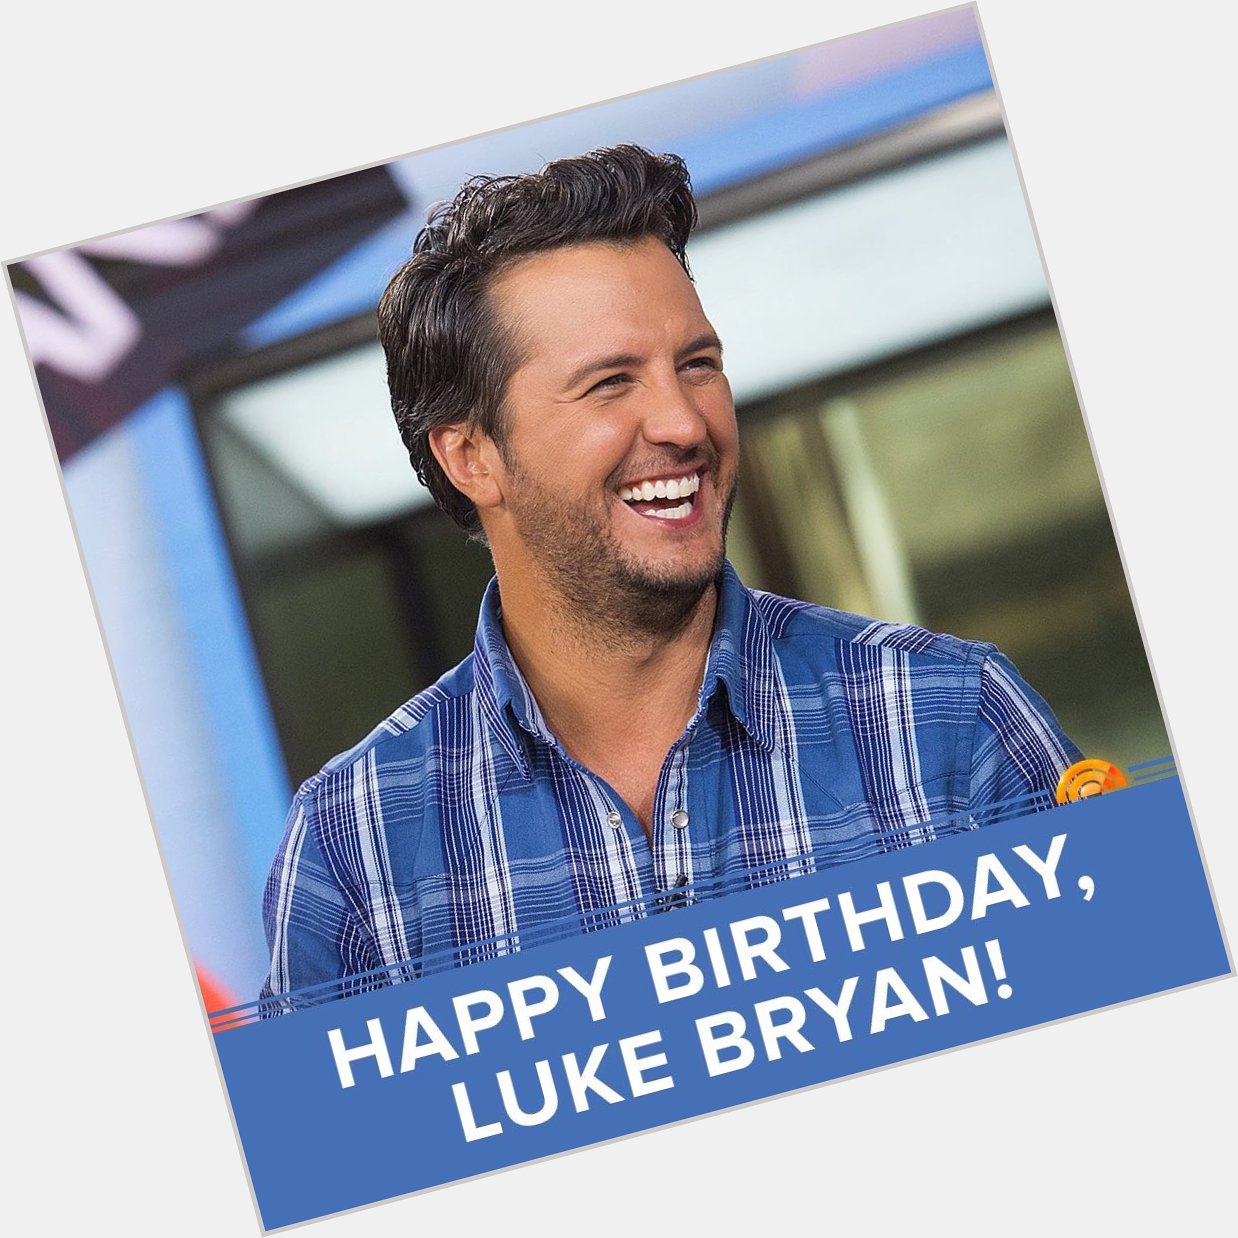 Happy birthday to Luke Bryan. Hope that he has a wonderful birthday     